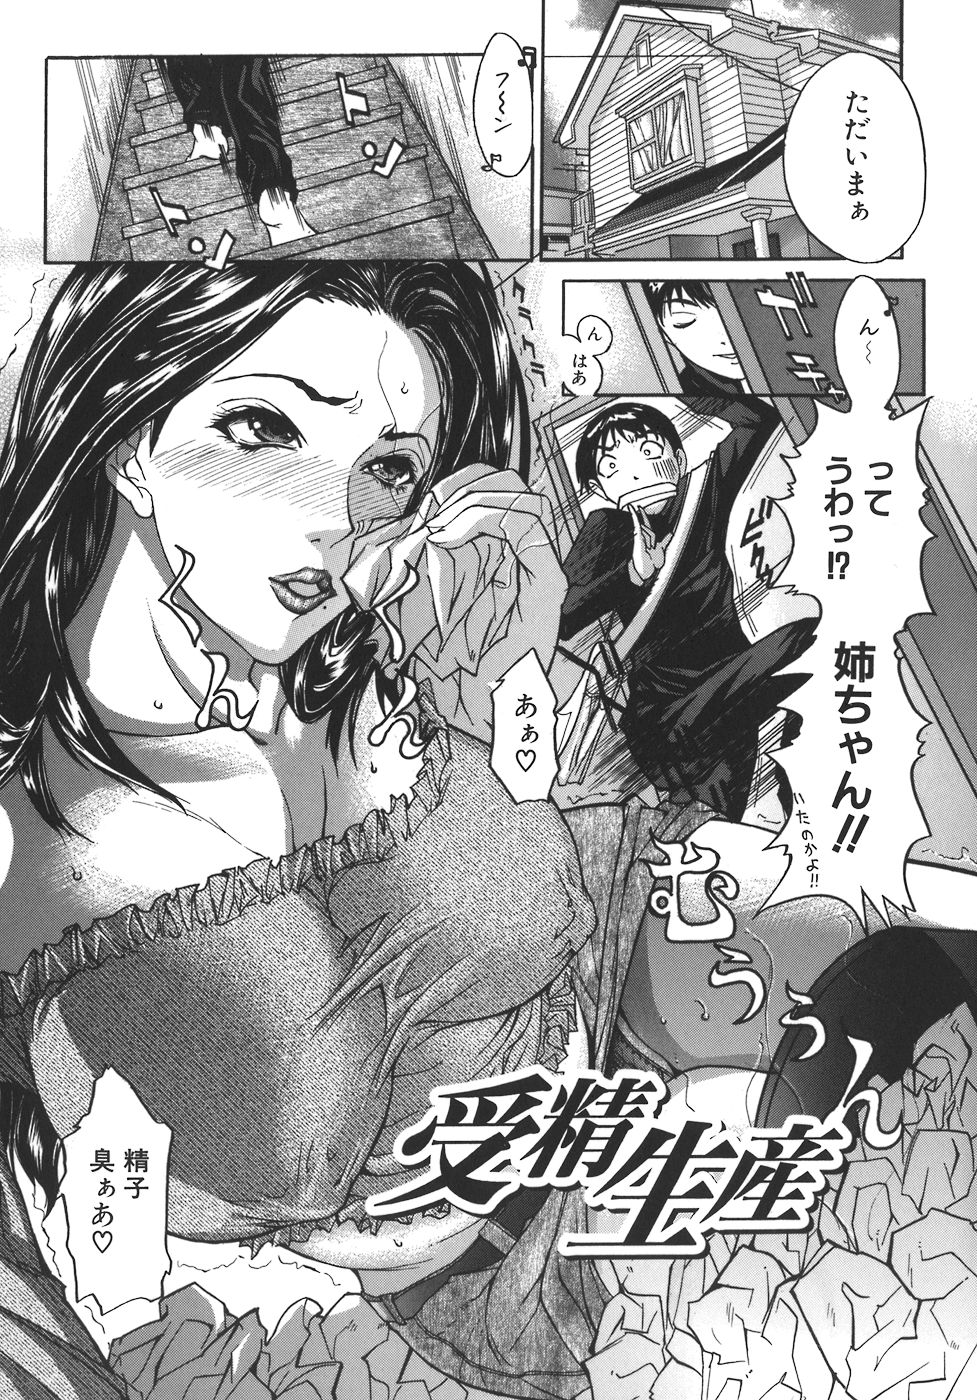 [Sawada Daisuke] Mamagoto page 27 full